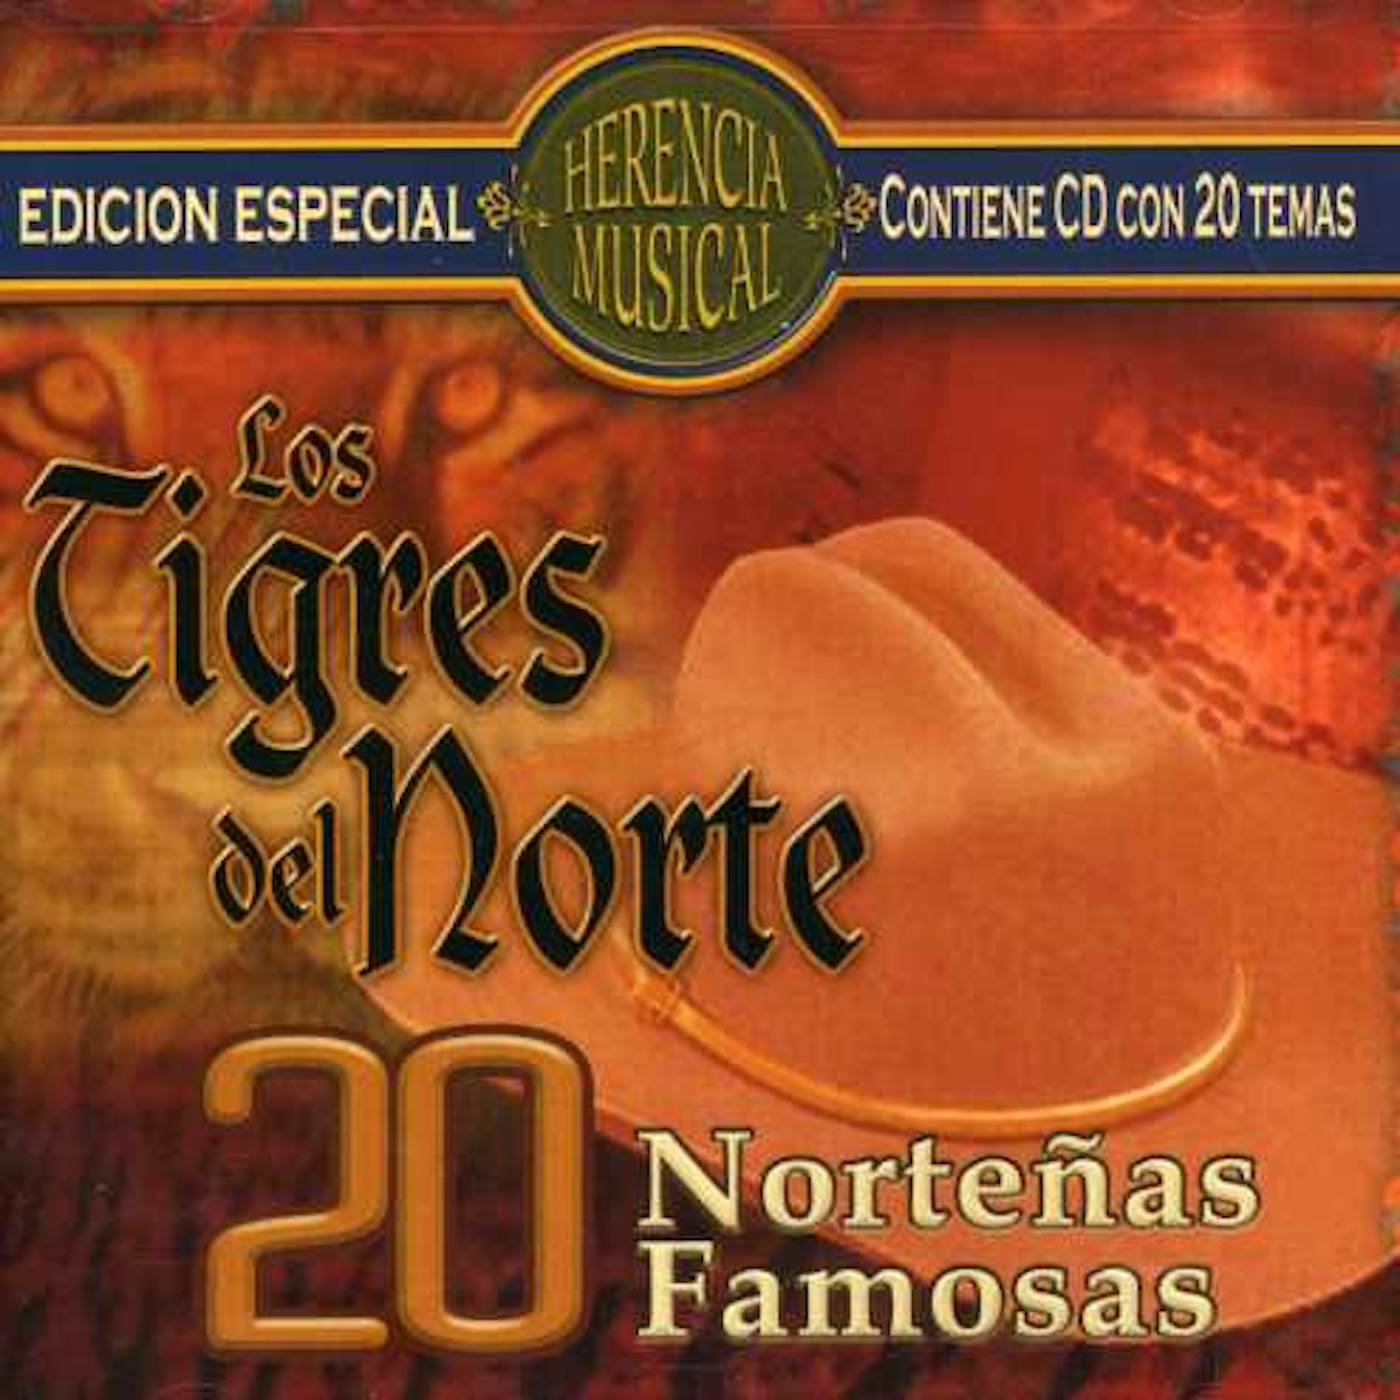 Los Tigres Del Norte 20 NORTENAS FAMOSAS CD